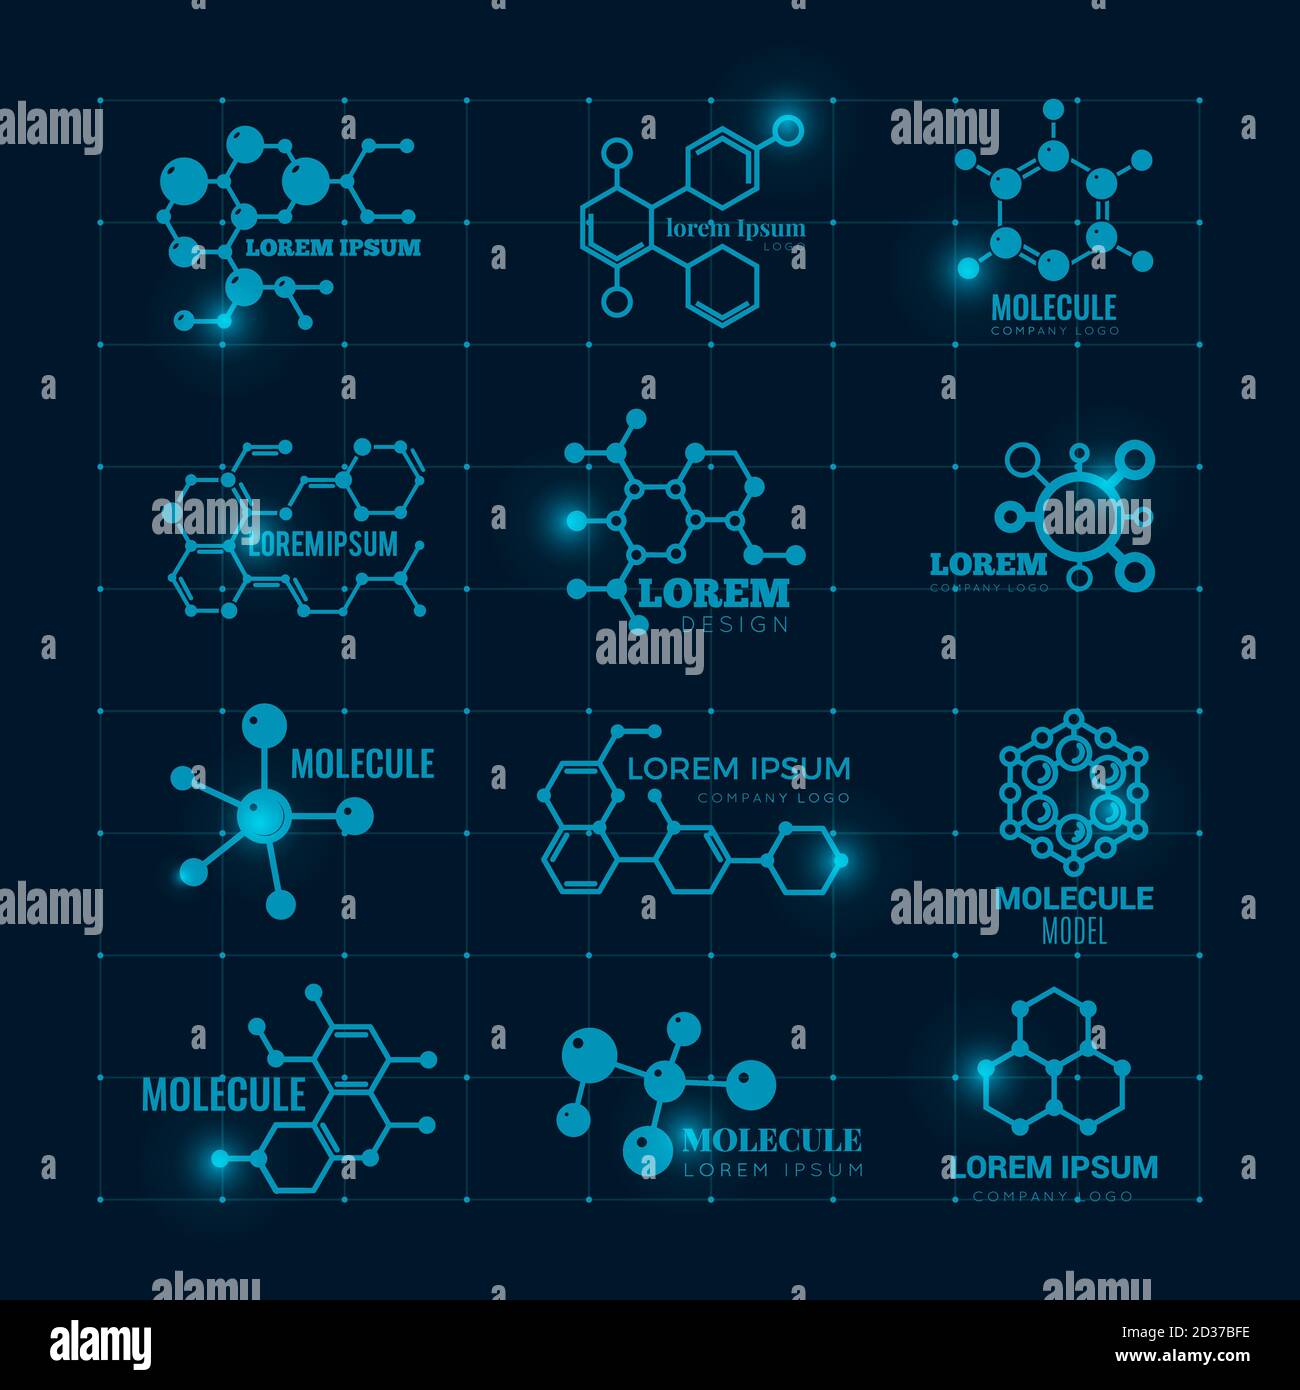 Molecular Logo mit Glanzeffekt. Chemie dna Molekül wissenschaftliche Struktur Atom Symbole Vektor-Set Stock Vektor